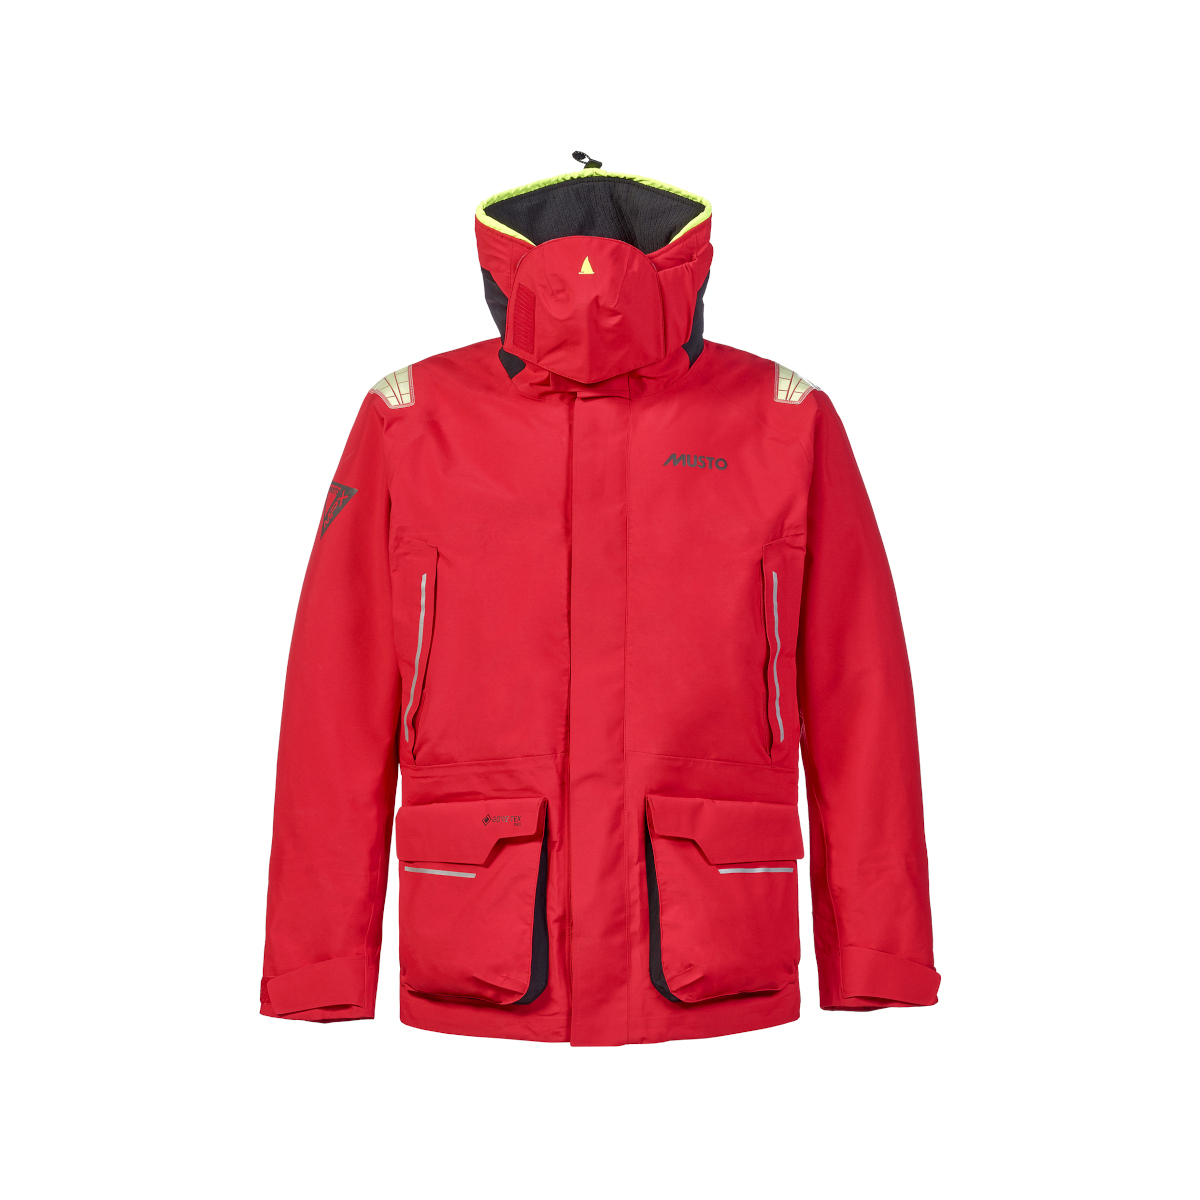 Musto MPX Gore-Tex Pro Offshore 2.0 veste de voile homme rouge, taille XL